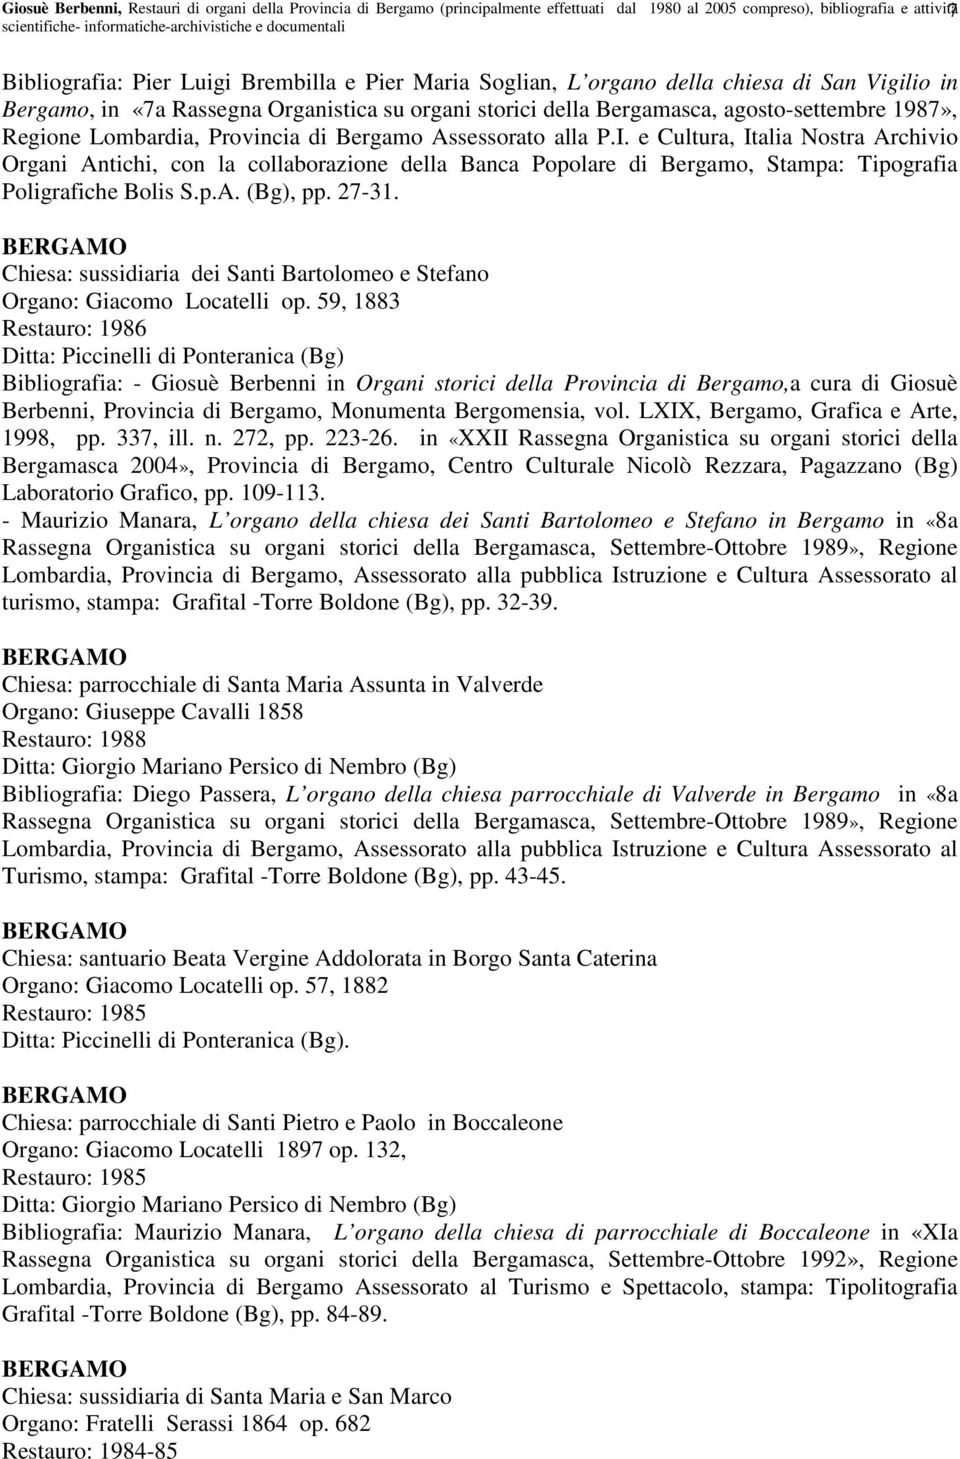 alla P.I. e Cultura, Italia Nostra Archivio Organi Antichi, con la collaborazione della Banca Popolare di Bergamo, Stampa: Tipografia Poligrafiche Bolis S.p.A. (Bg), pp. 27-31.